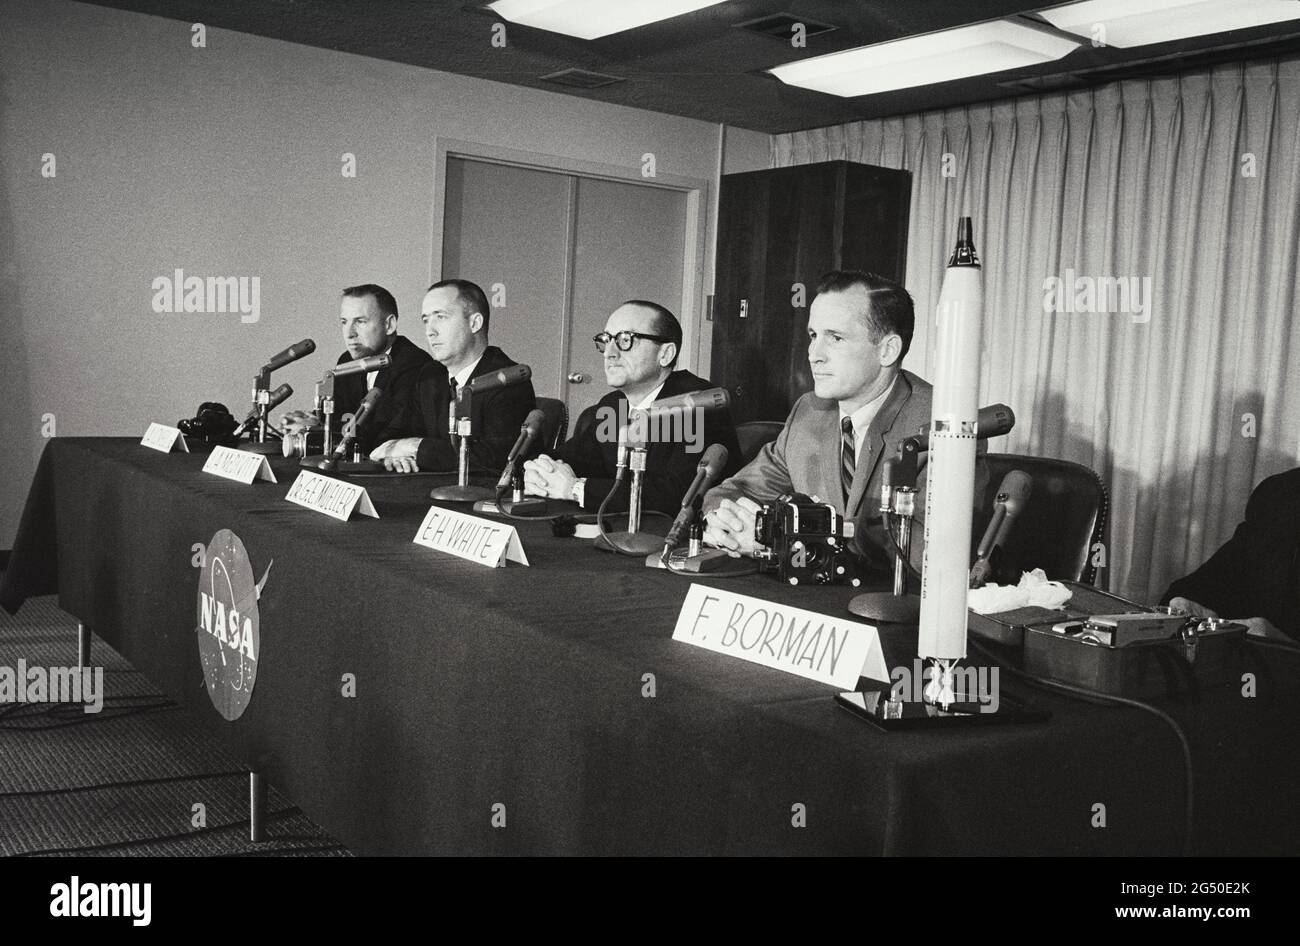 Les astronautes américains J.A. Lovell j.r., J.A. McDivitt, dr. G. E. Mueller, E.H. Whiteand et F. Borman au briefing de la NASA. ÉTATS-UNIS. 1965 avril 29 Banque D'Images